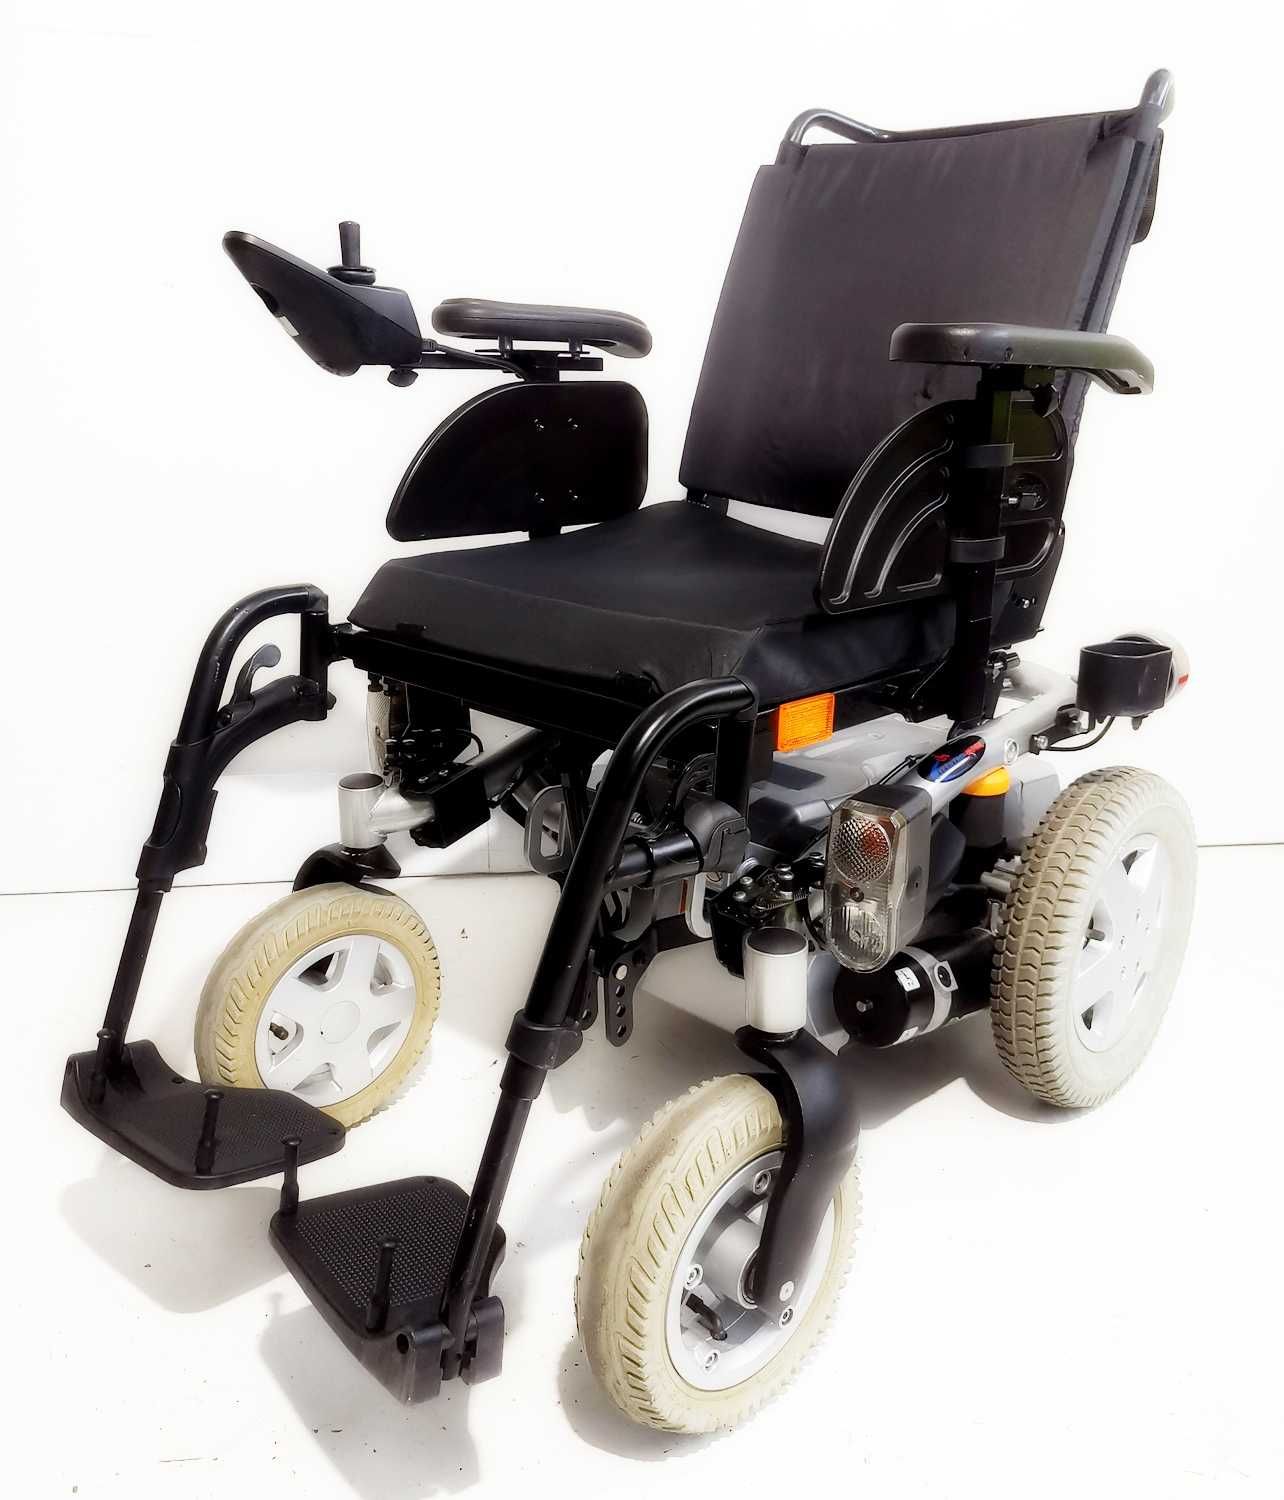 Wózek inwalidzki elektryczny używany INVACARE KITE sklep GWARANCJA FV